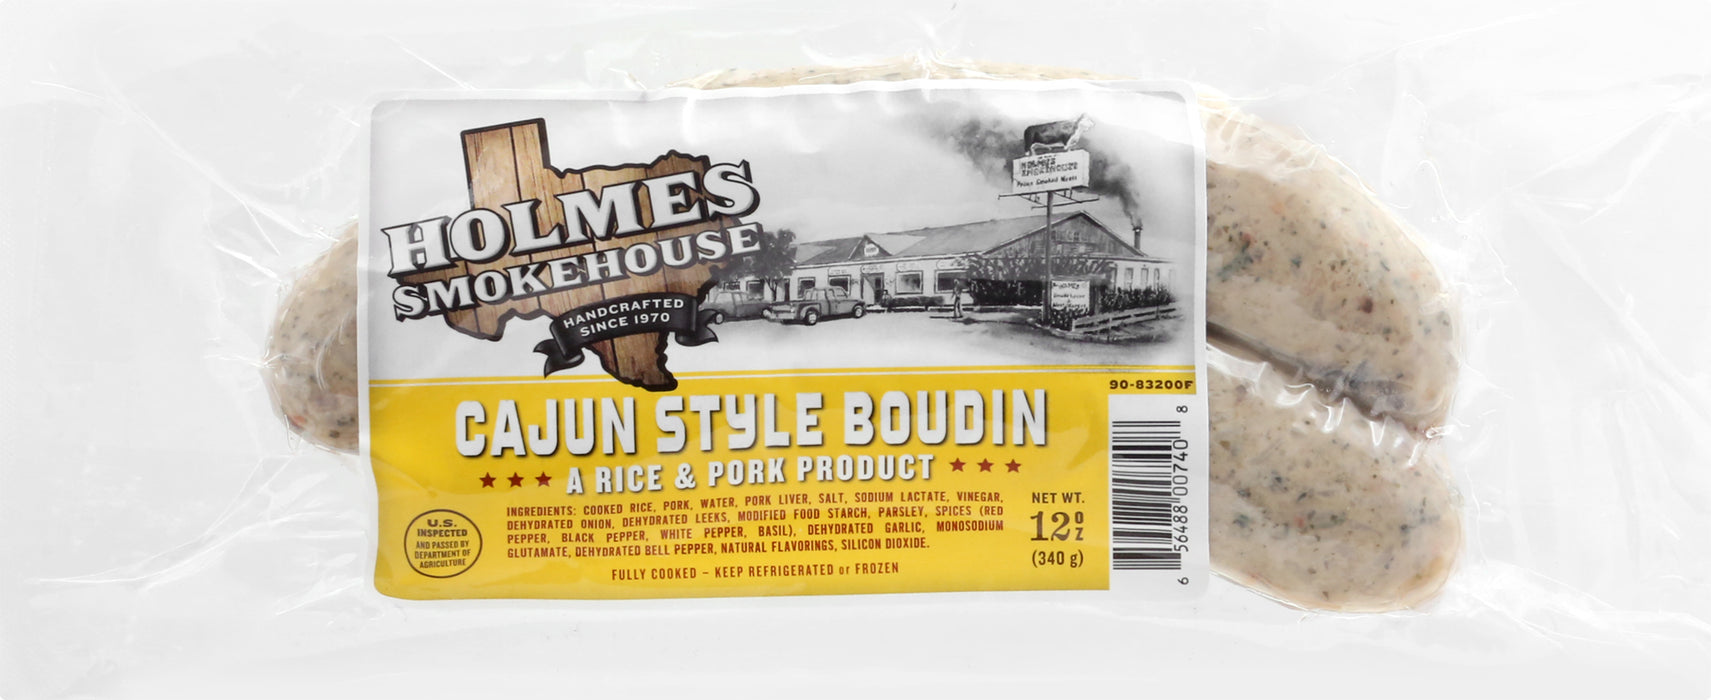 Holmes Smokehouse Cajun Style Boudin 12 oz